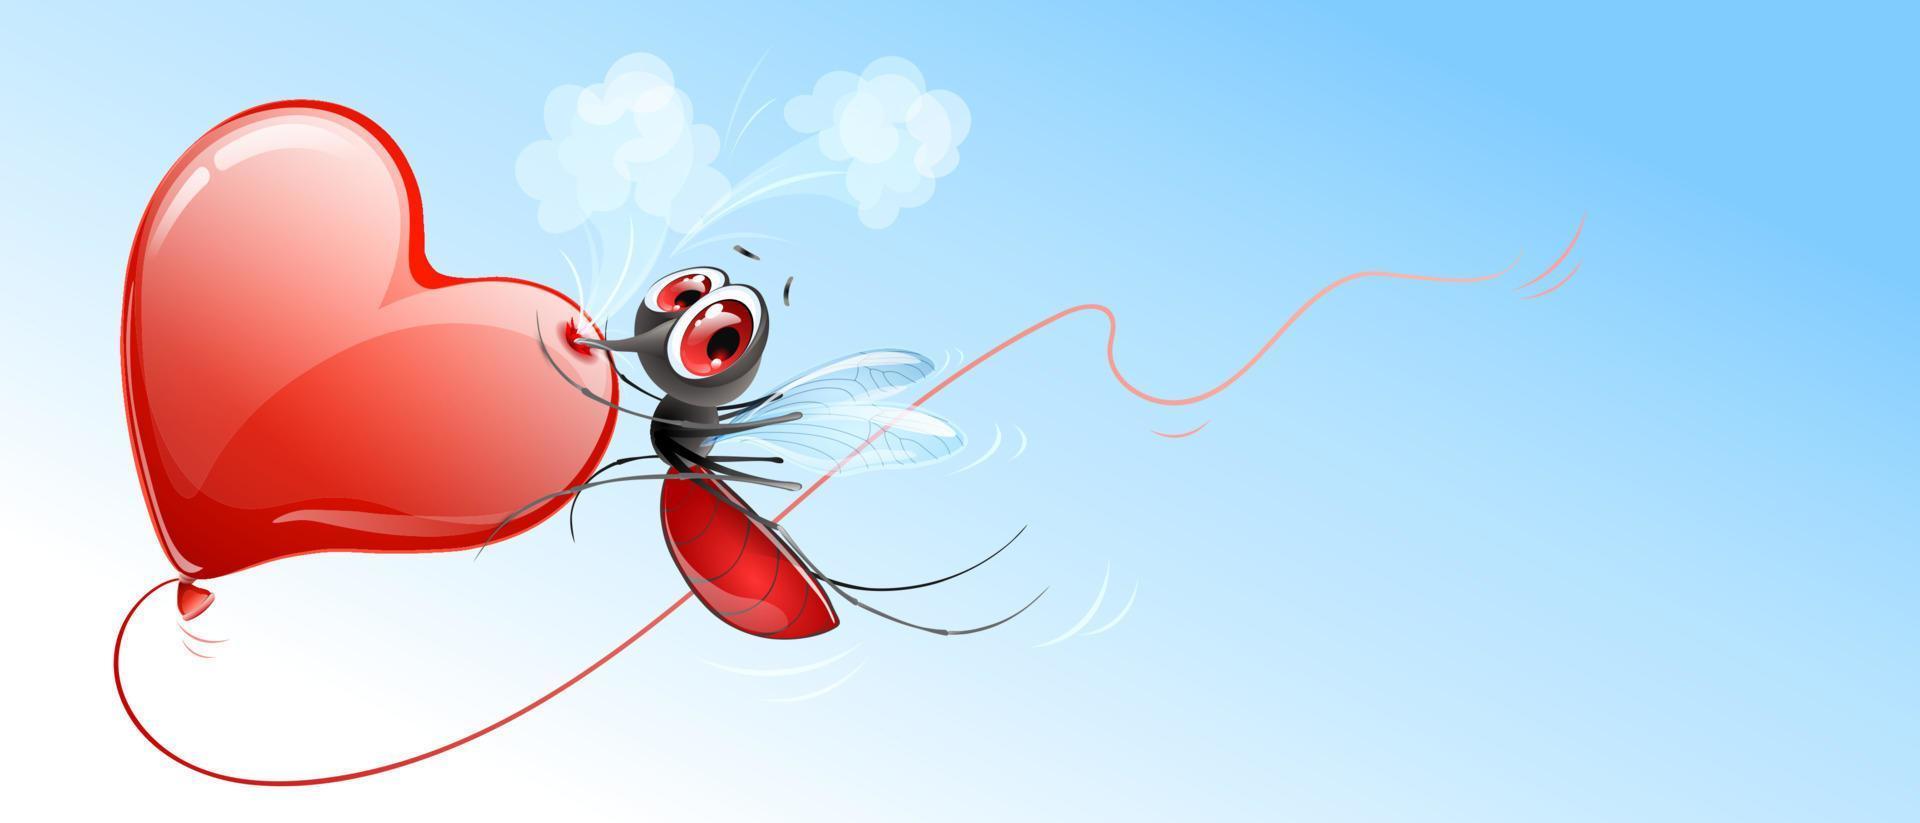 mosquito pica balão de coração e corre rápido para cima dele vetor